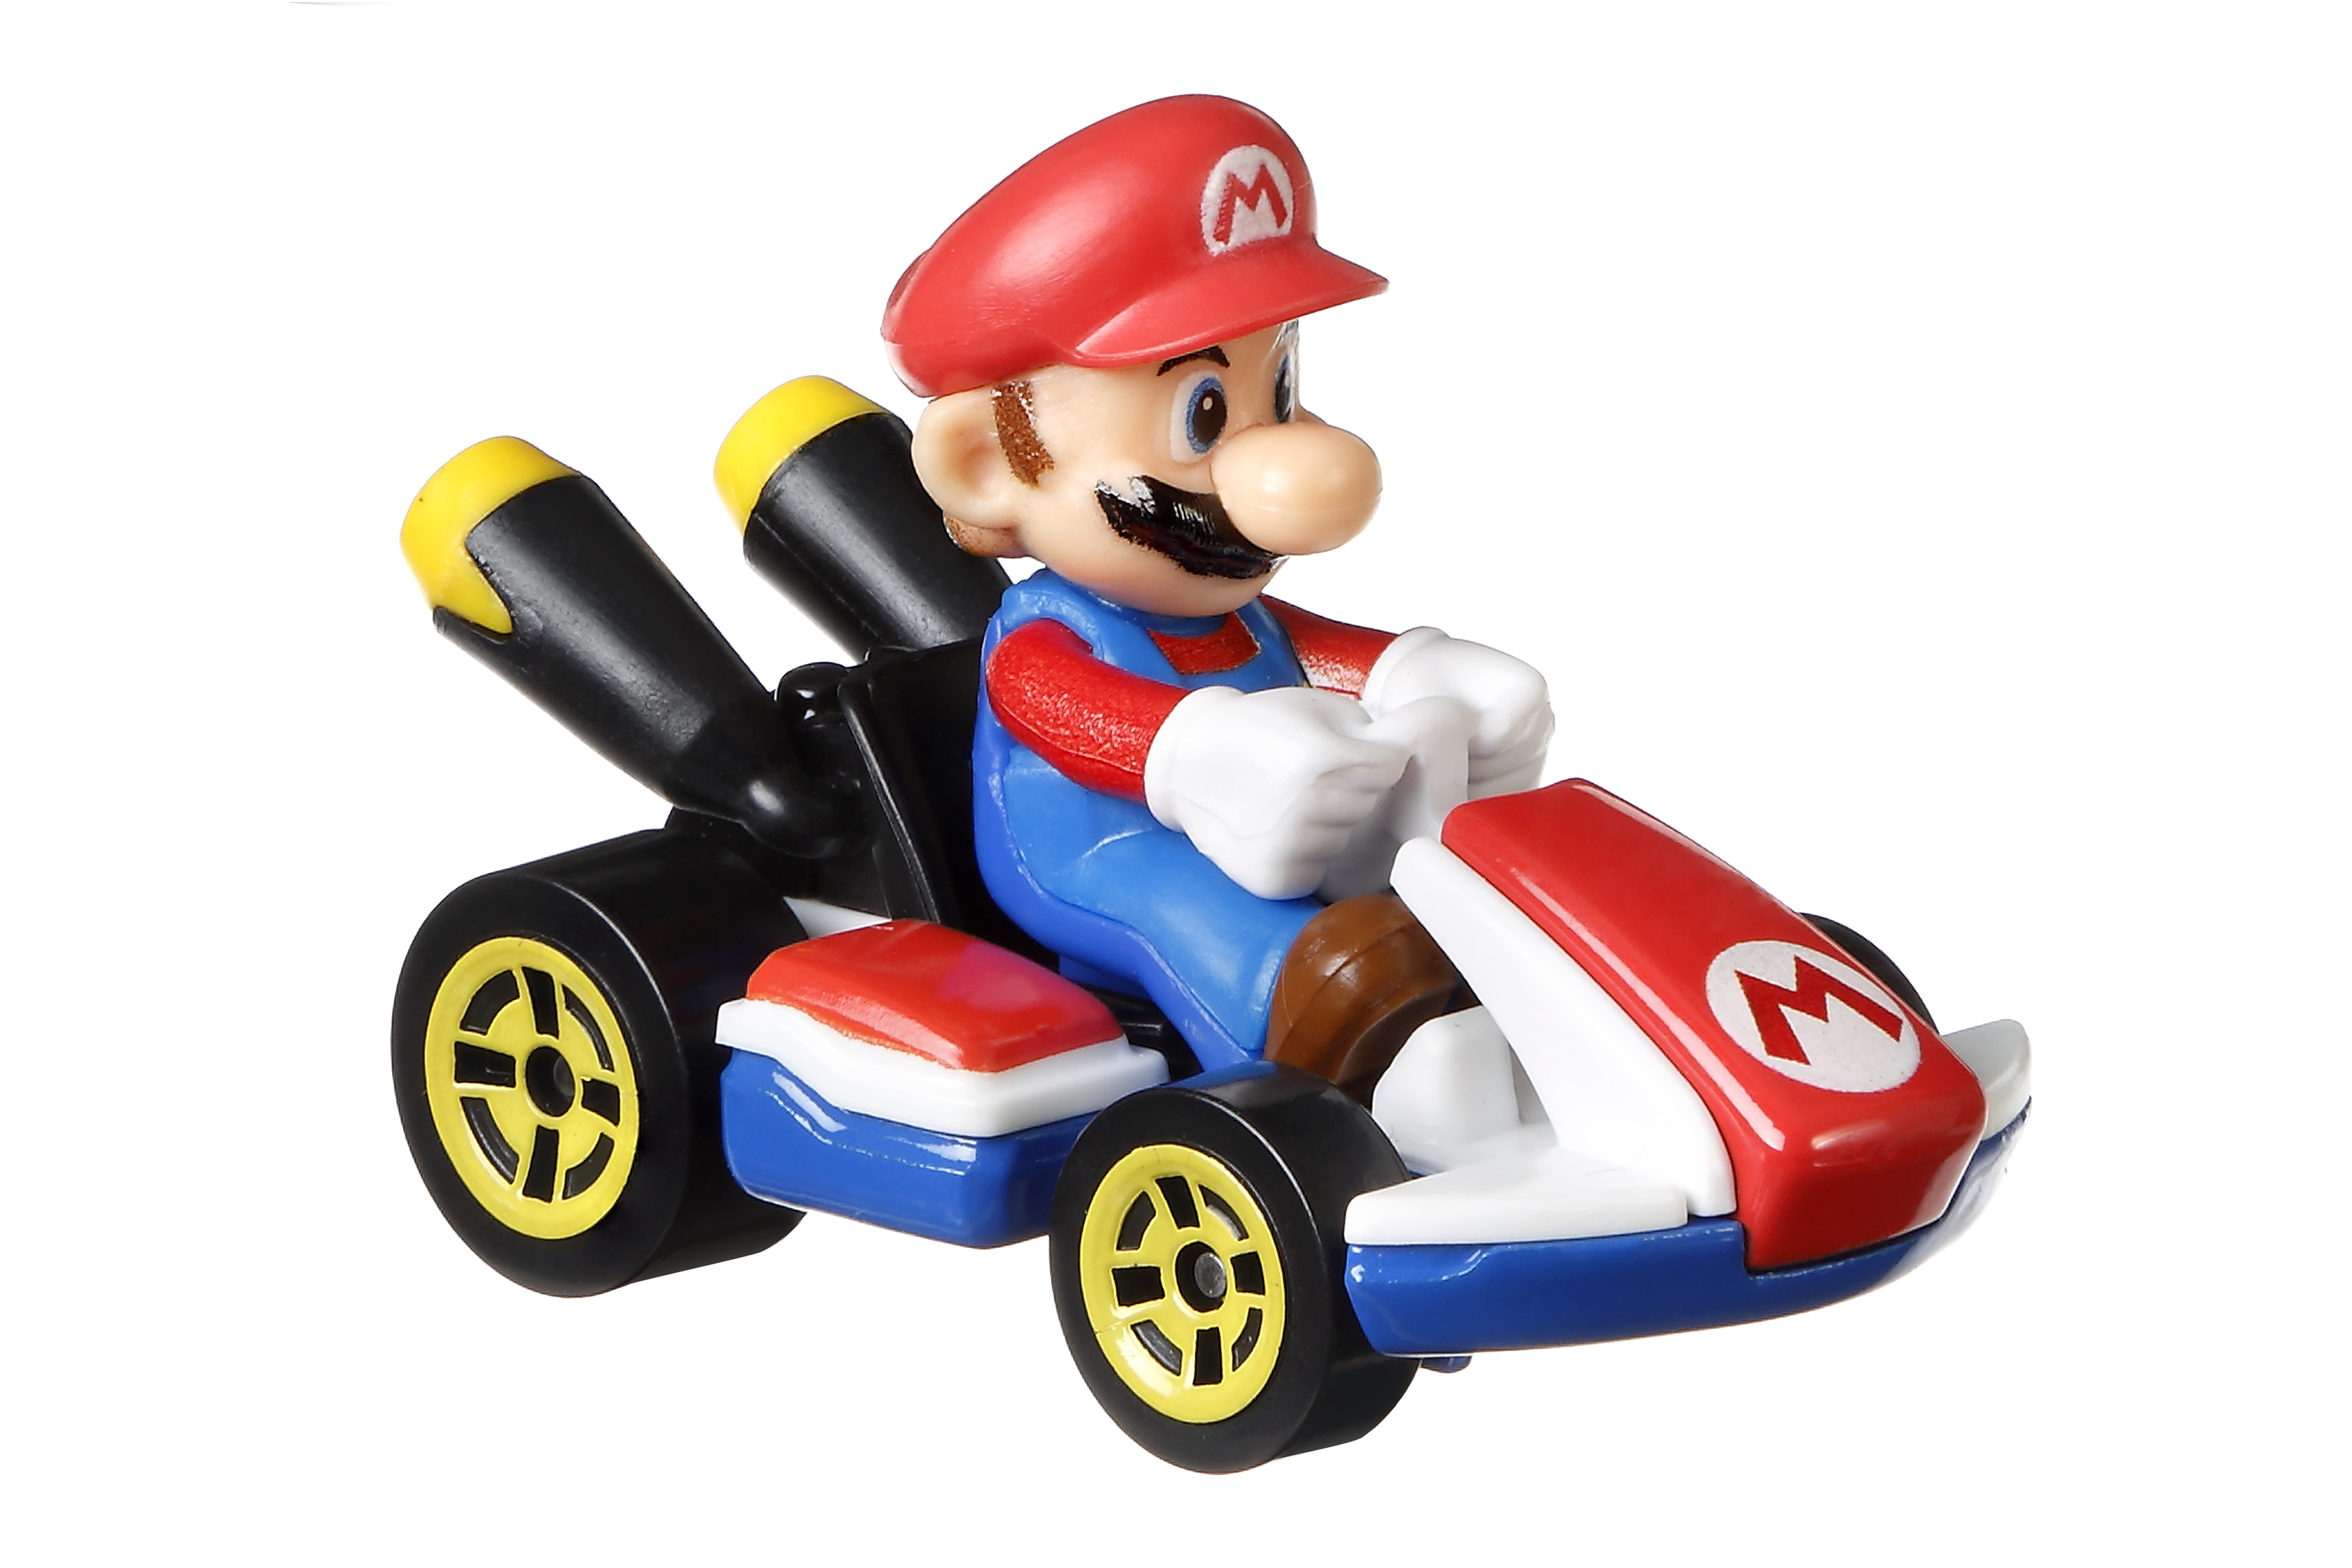 Luigi Mario Kart Mini-véhicules Mario Coffret de Jeu pour Mini-Voitures avec Piste modulable Bowser et Yoshi Hot Wheels Mario Kart Chaos au château de Bowser avec Mini-véhicule Inclus 